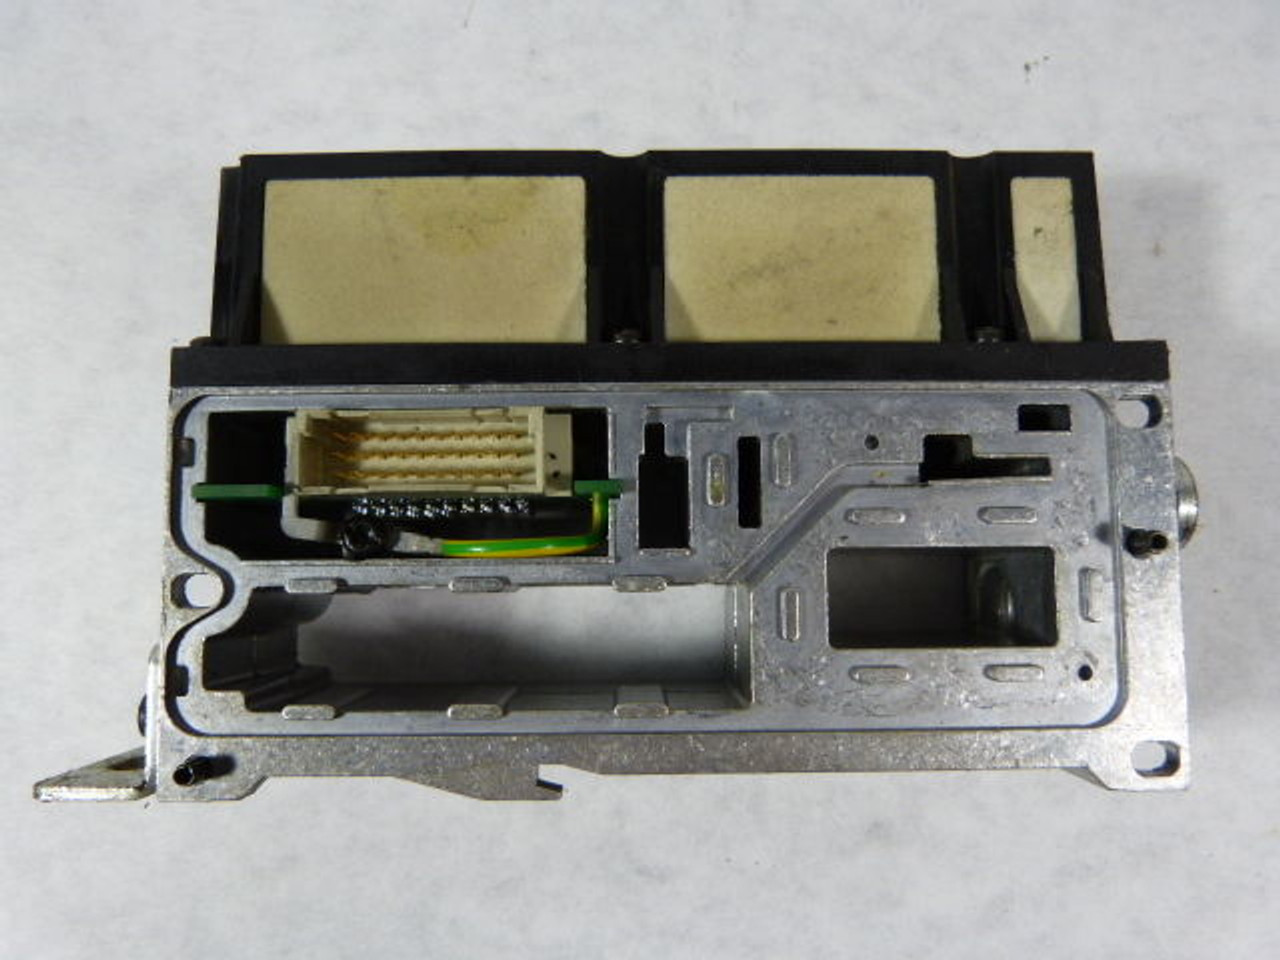 Festo VIGP-03-4.0-U Adapter Plate Manifold Block USED